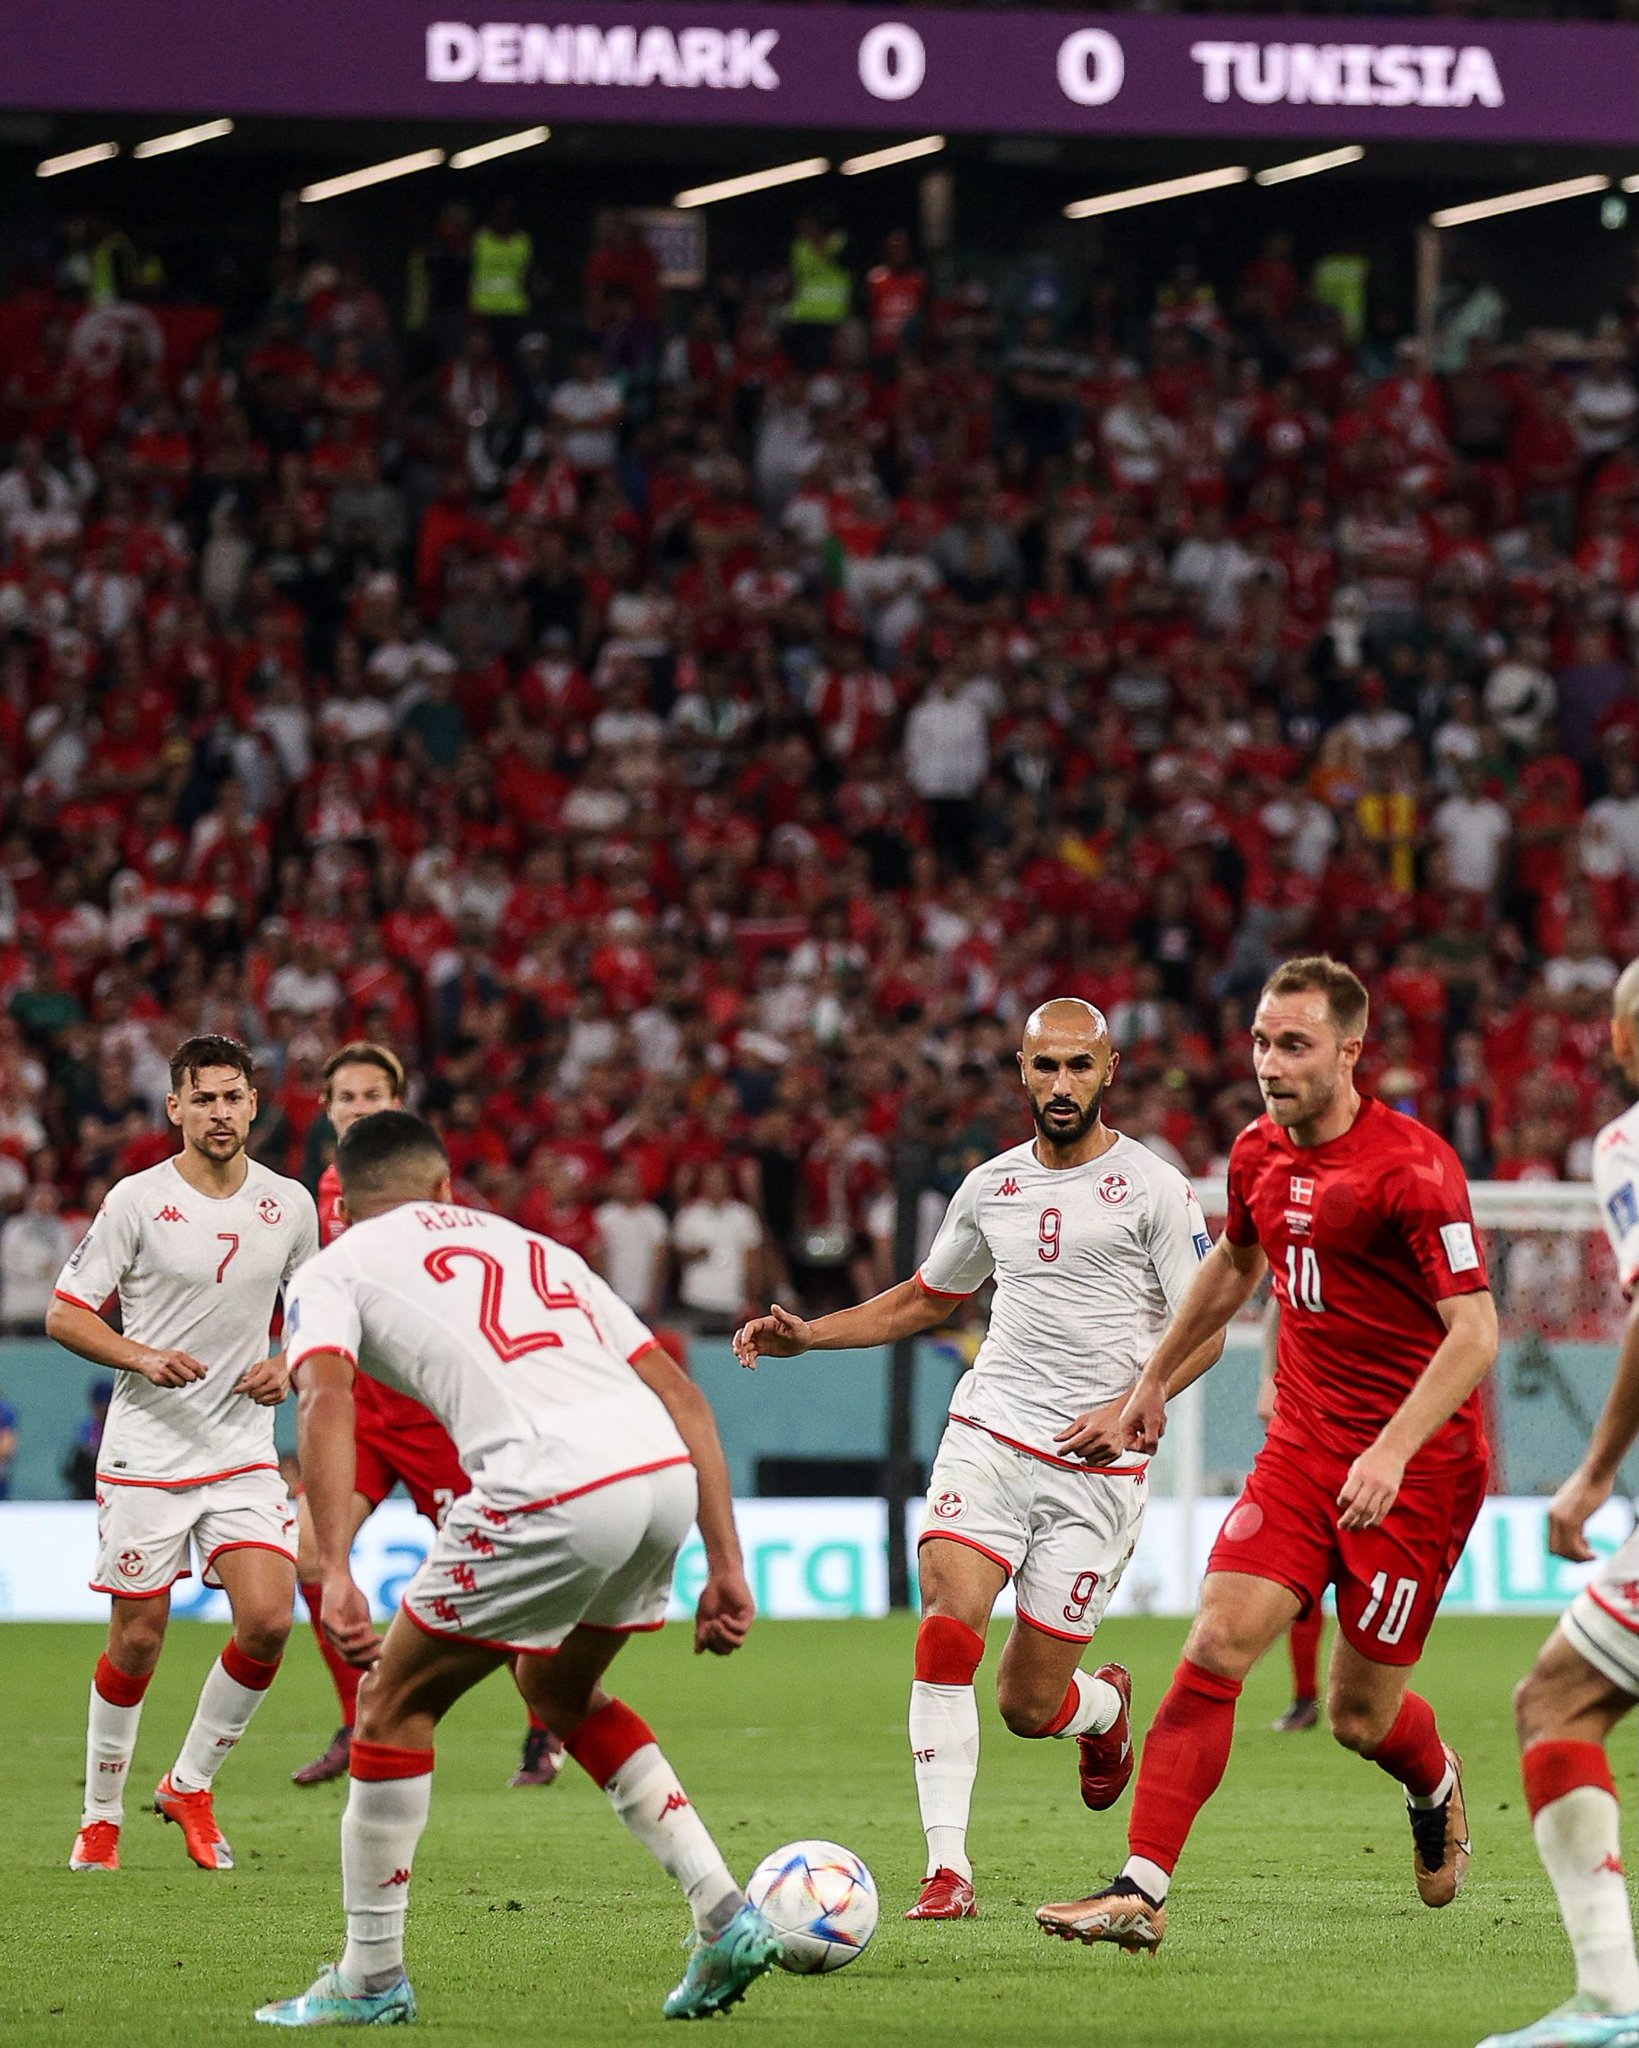 لقاء تونس × الدنمارك كامل في كأس العالم 2022 قطر بتعليق عصام الشوالي